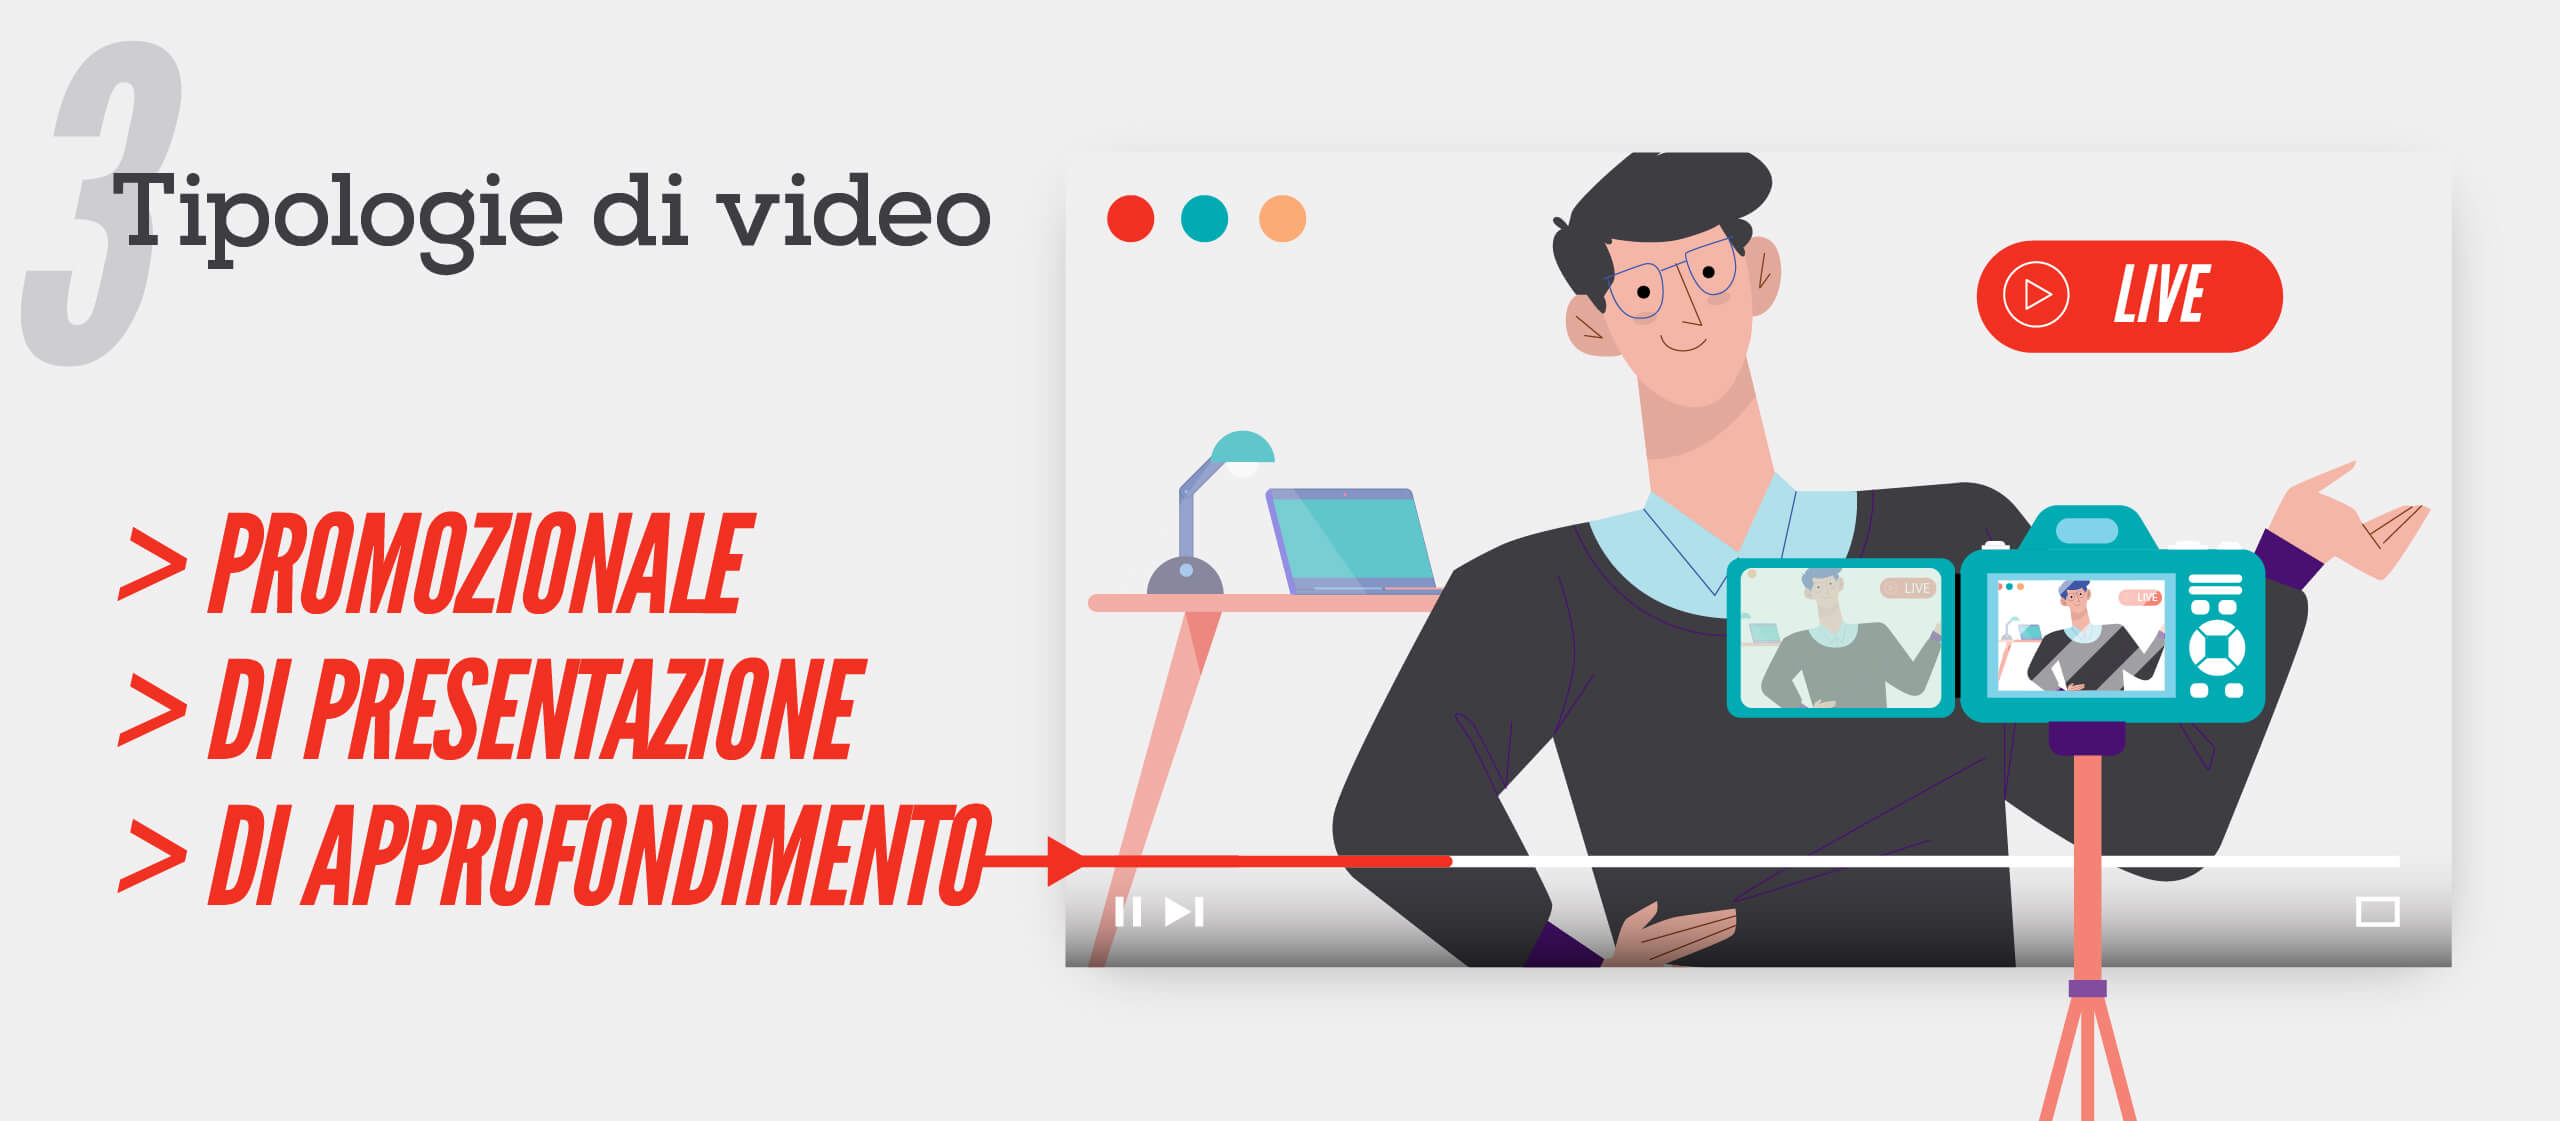 3 tipologie di video efficaci per la tua azienda